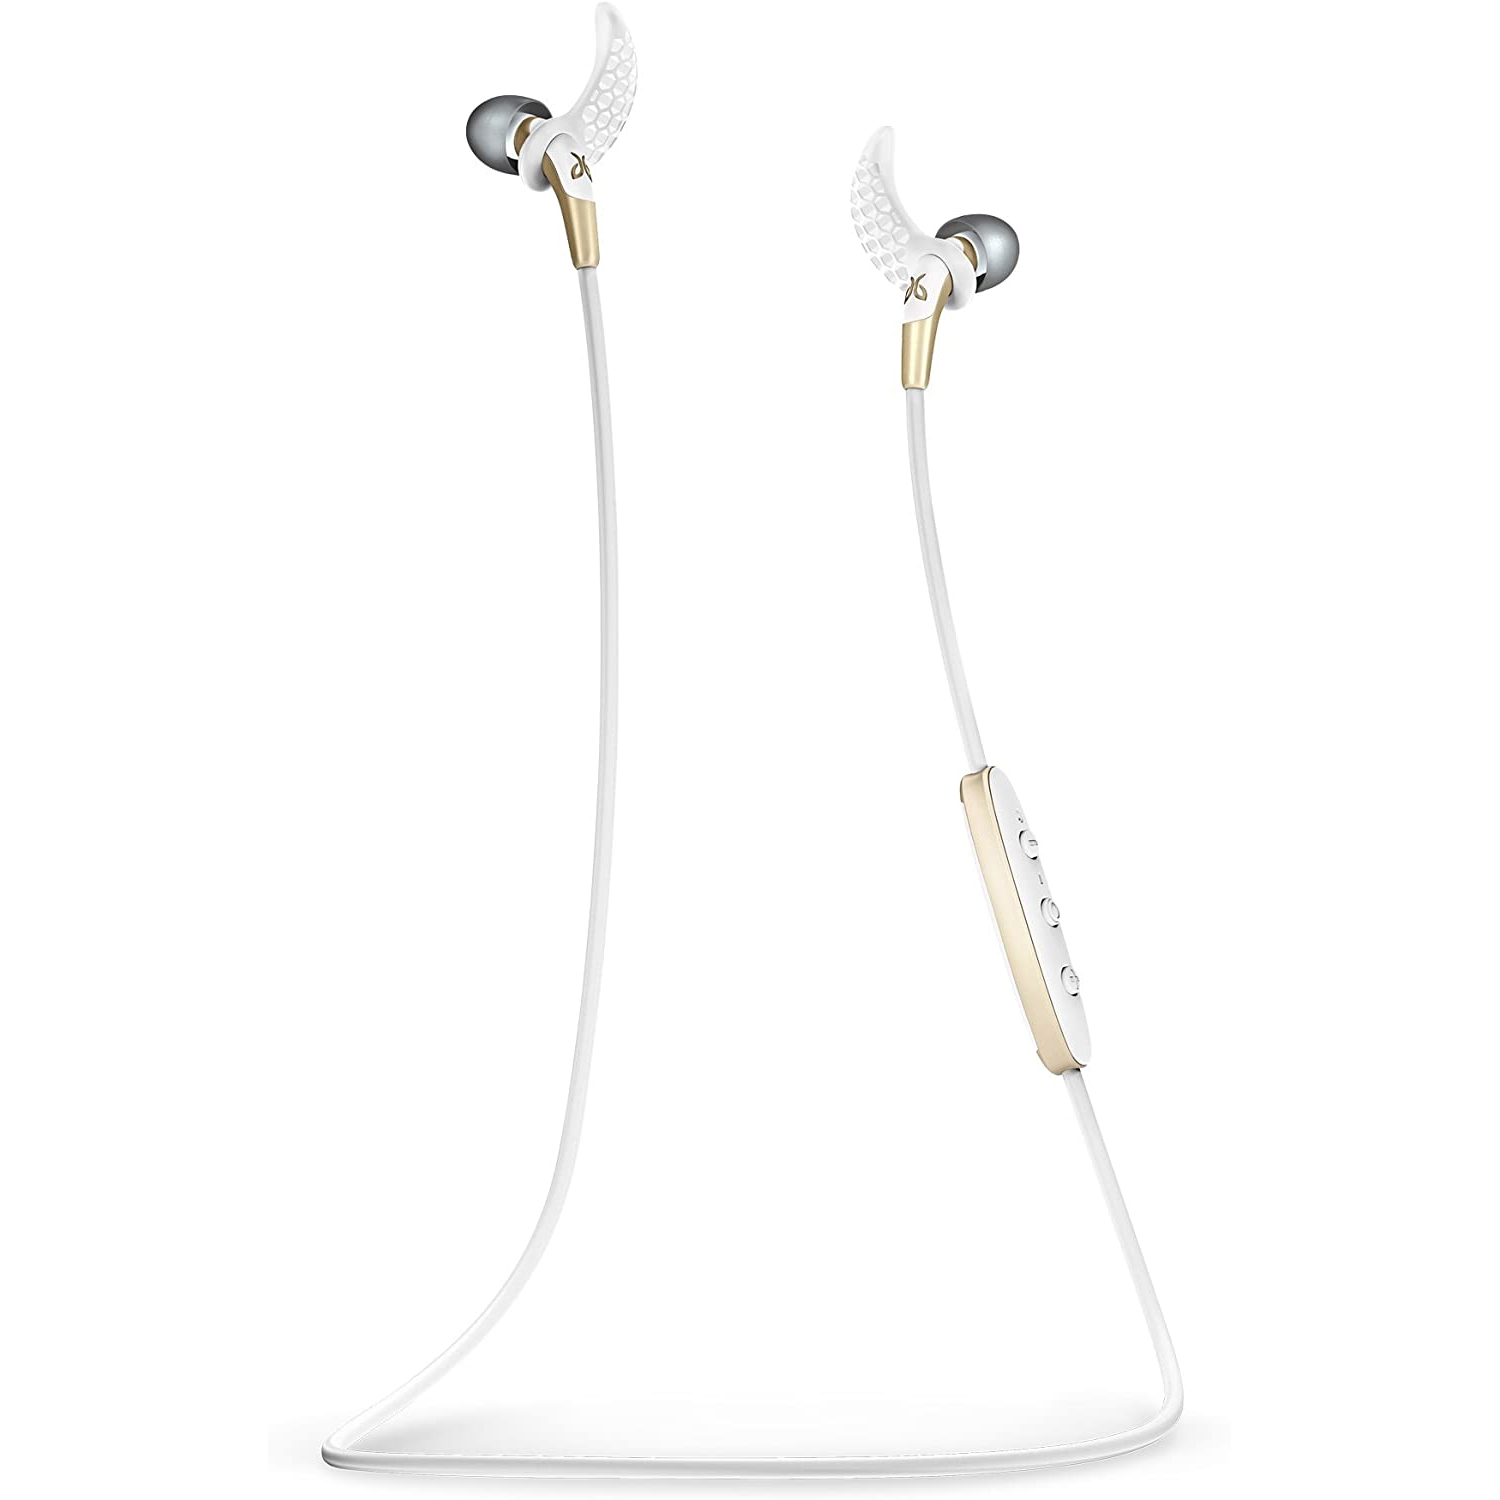 LOGITECH Jaybird Freedom F5 In-Ear Wireless Headphones Gold OPEN BOX